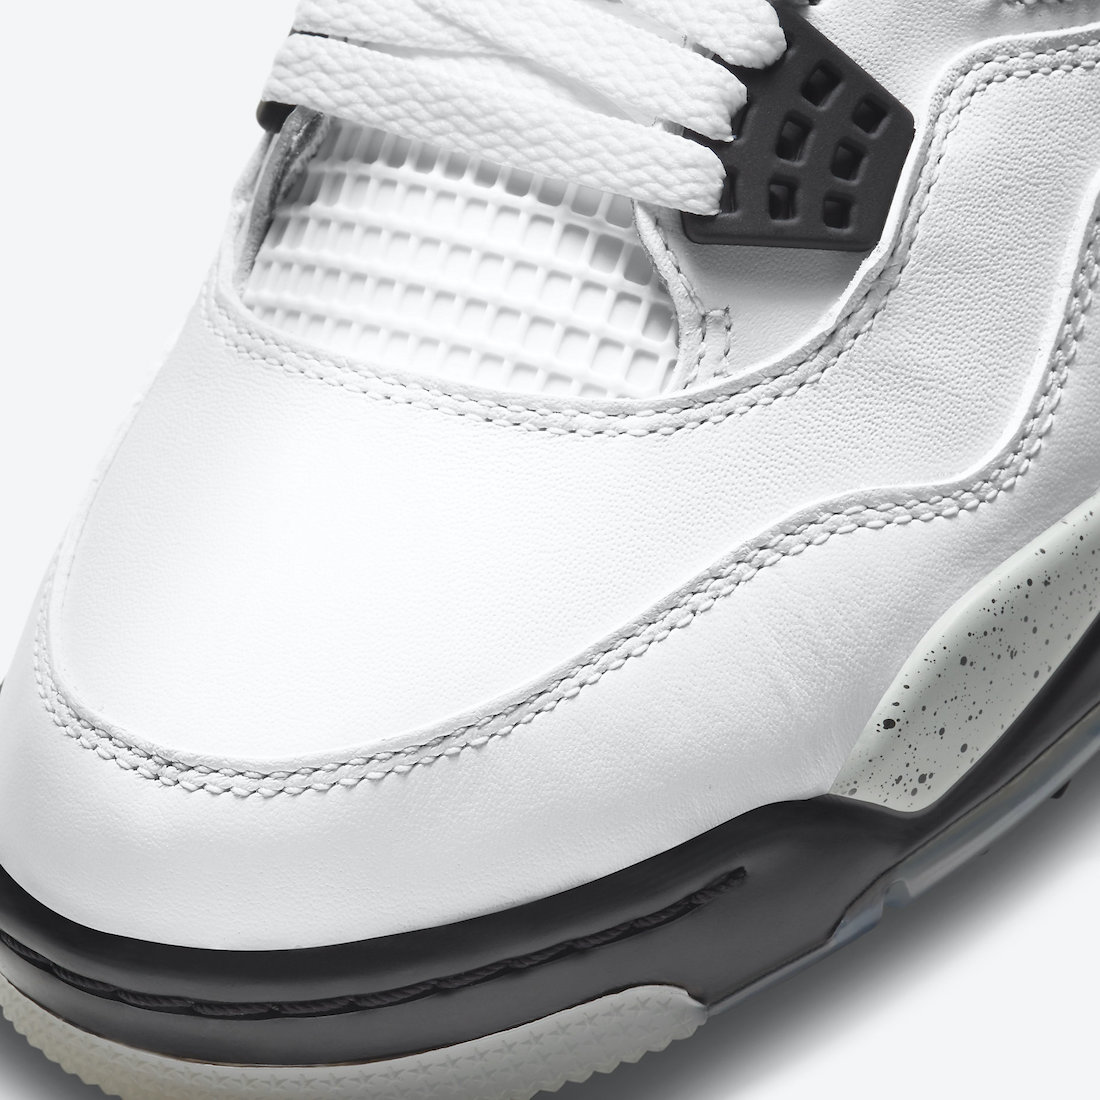 Air Jordan 4 Golf White Cement CU9981-100 Release Date Info | SneakerFiles